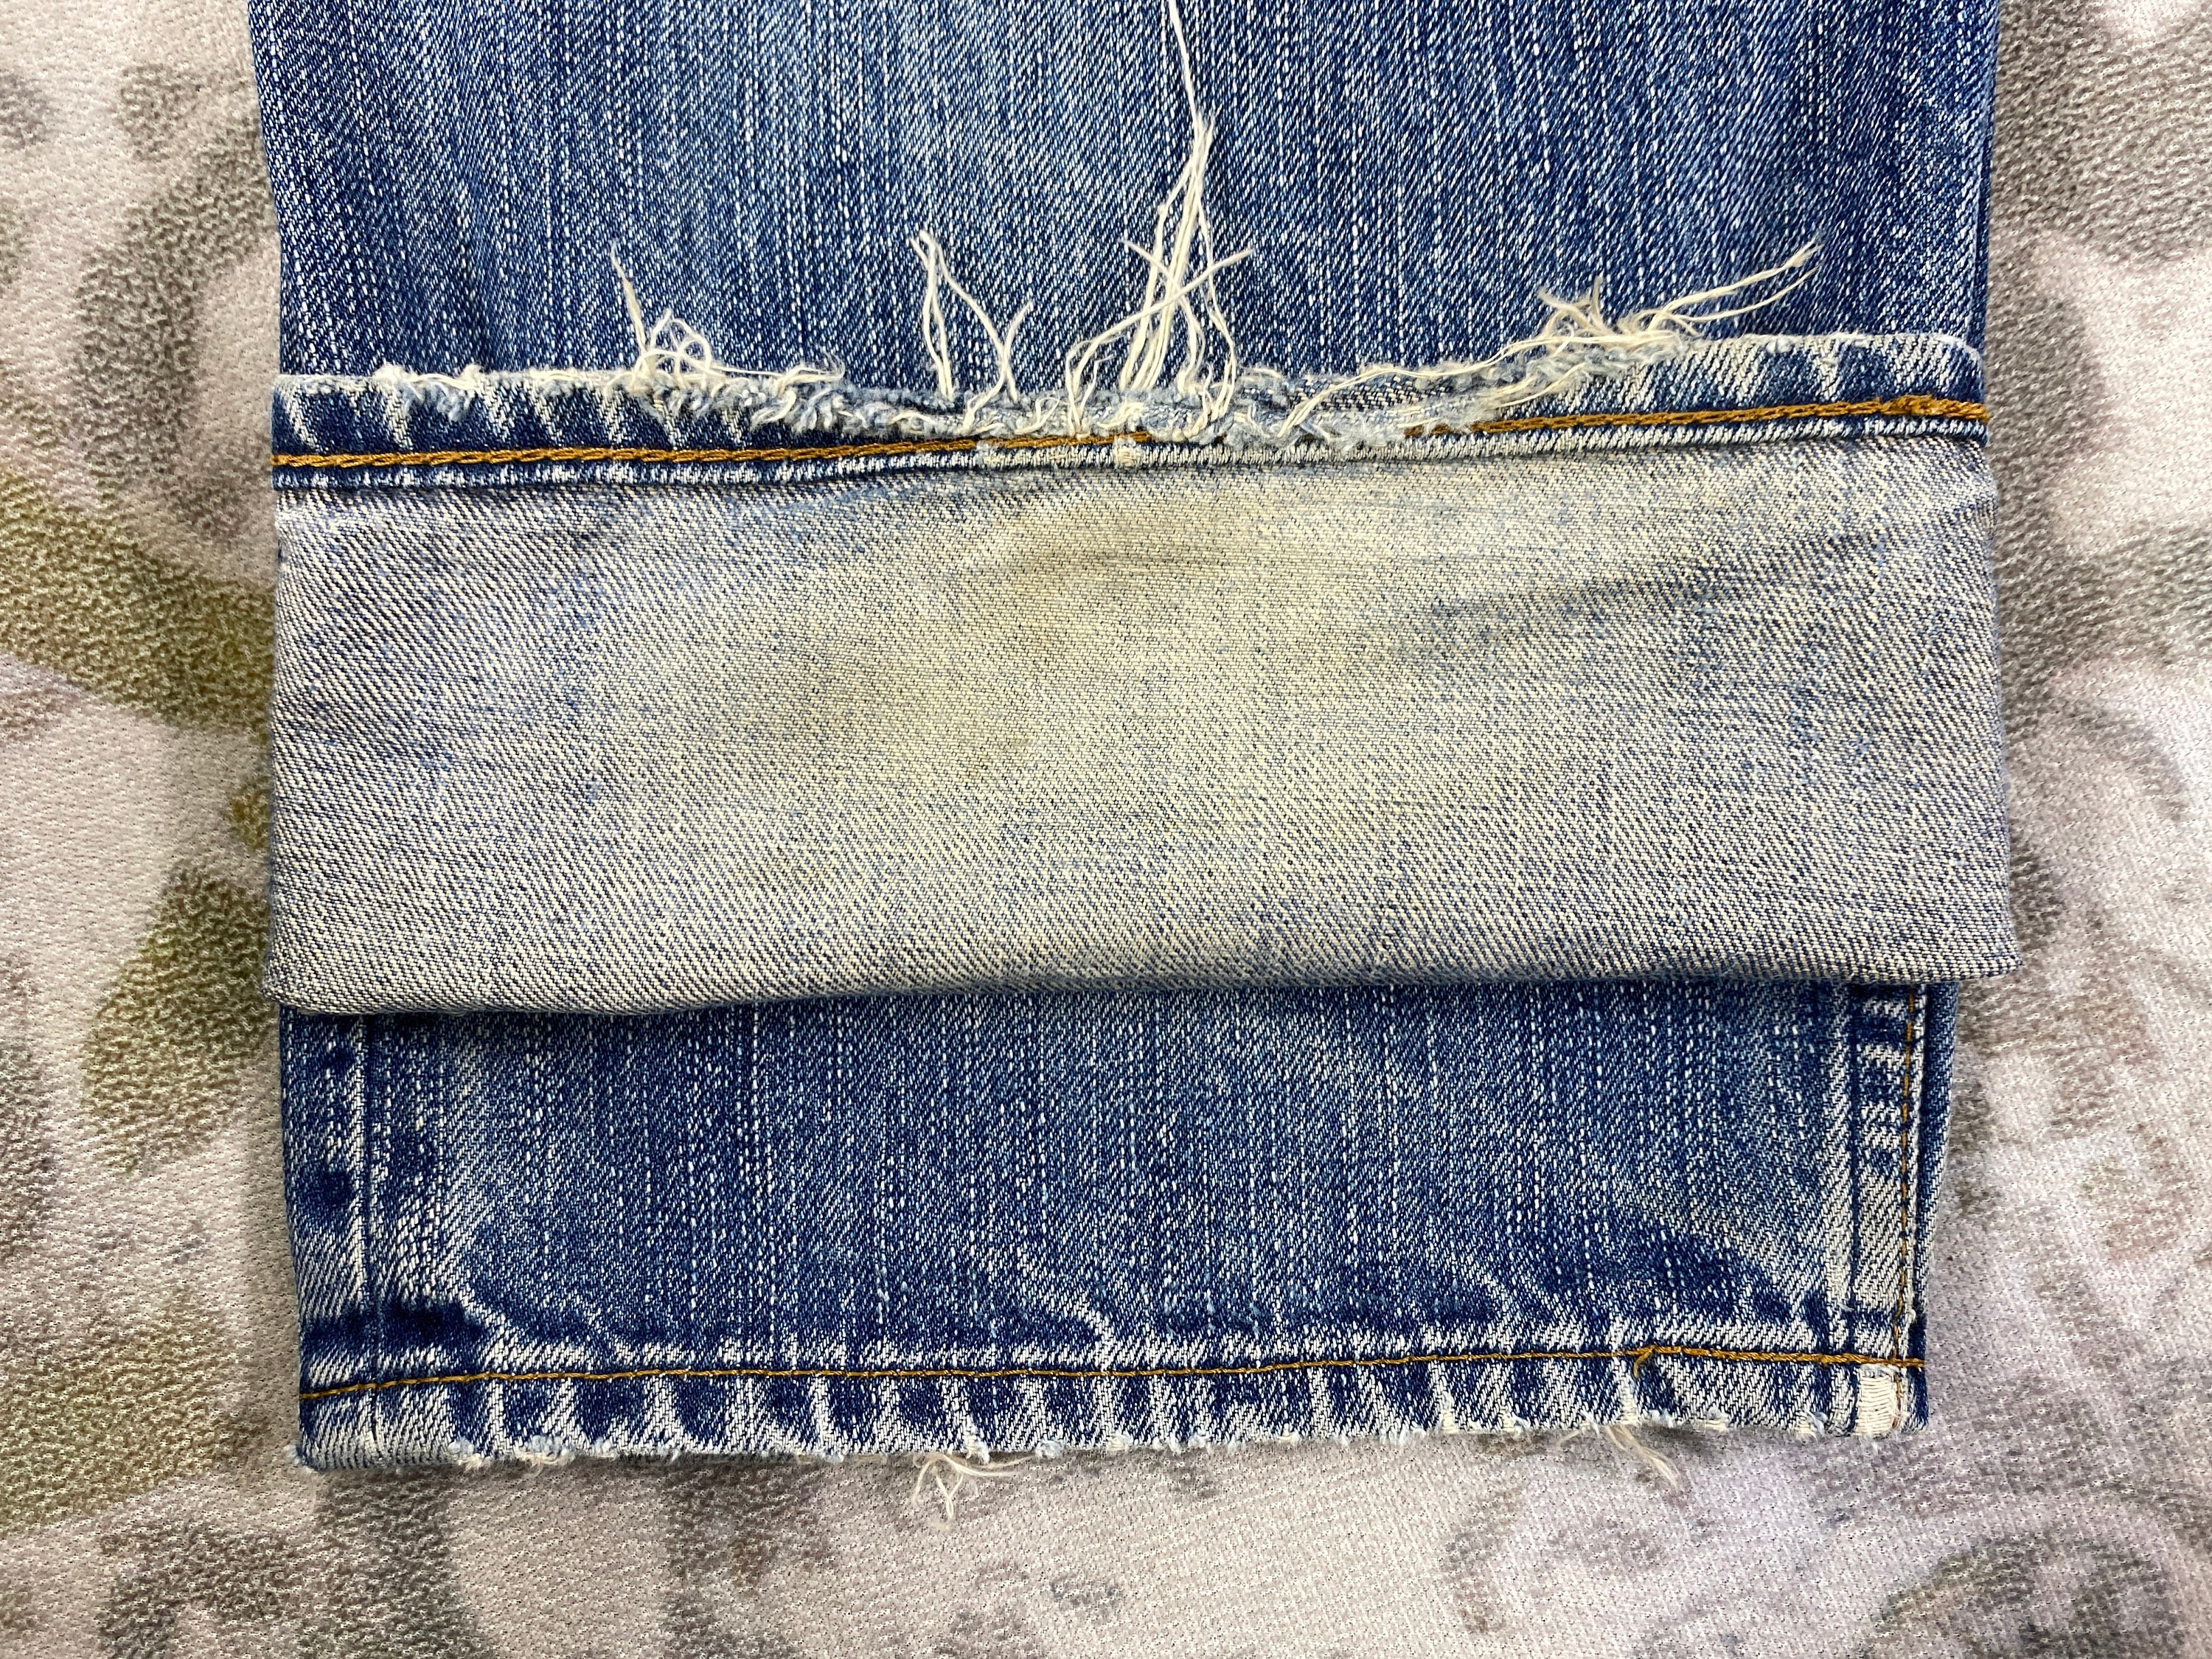 Vintage Levis 503 Jeans 34x32 JN 2935 Denim Blue Distressed Denim Faded  Denim Grunge Style Vintage Denim Unisex Jeans -  Canada